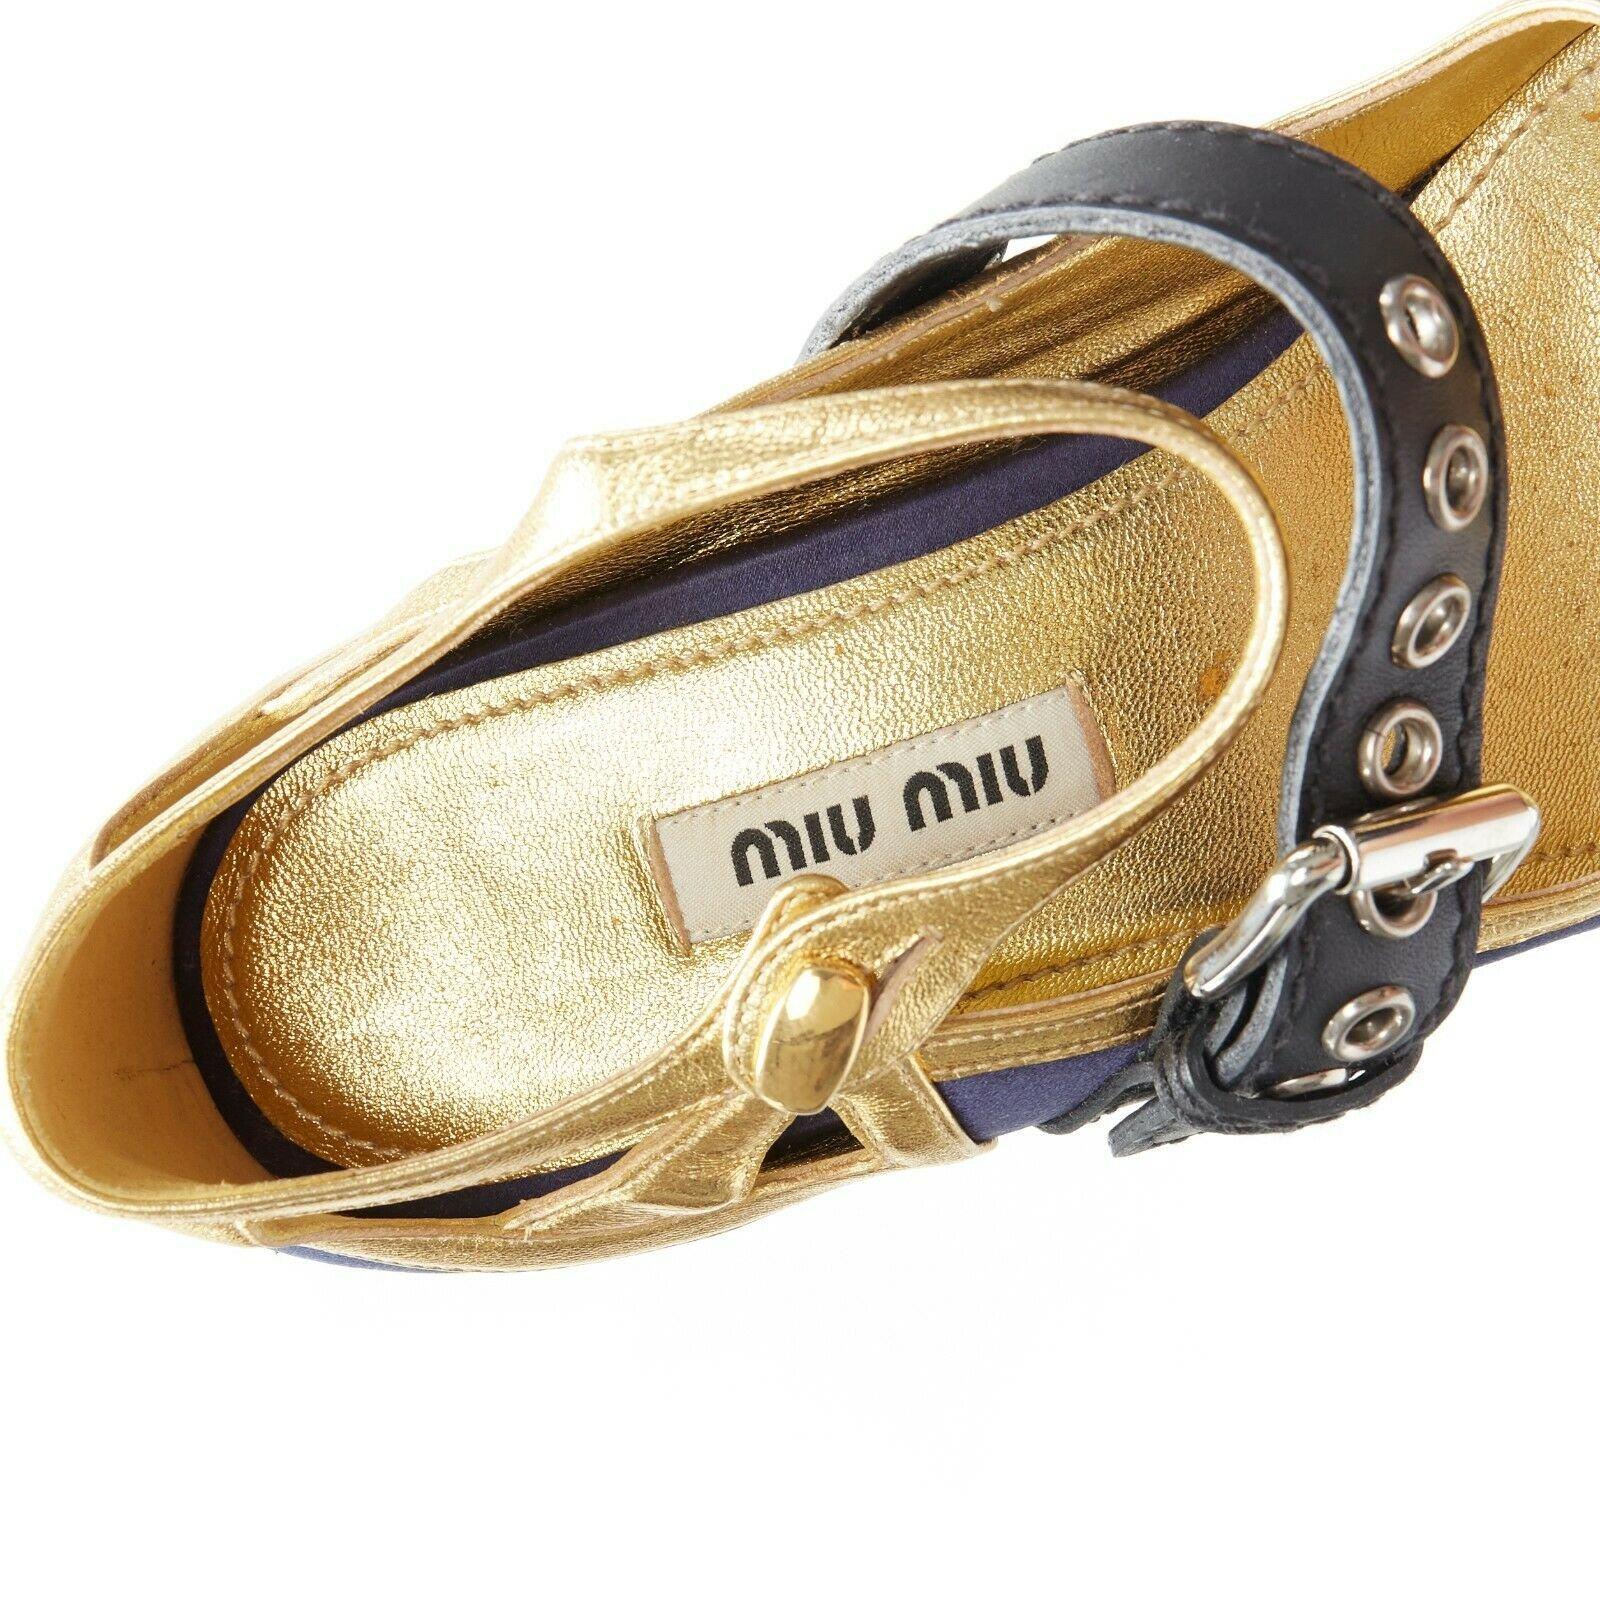 MIU MIU blue satin gold trimming punk strap white sculpted platform wedge EU34 For Sale 5